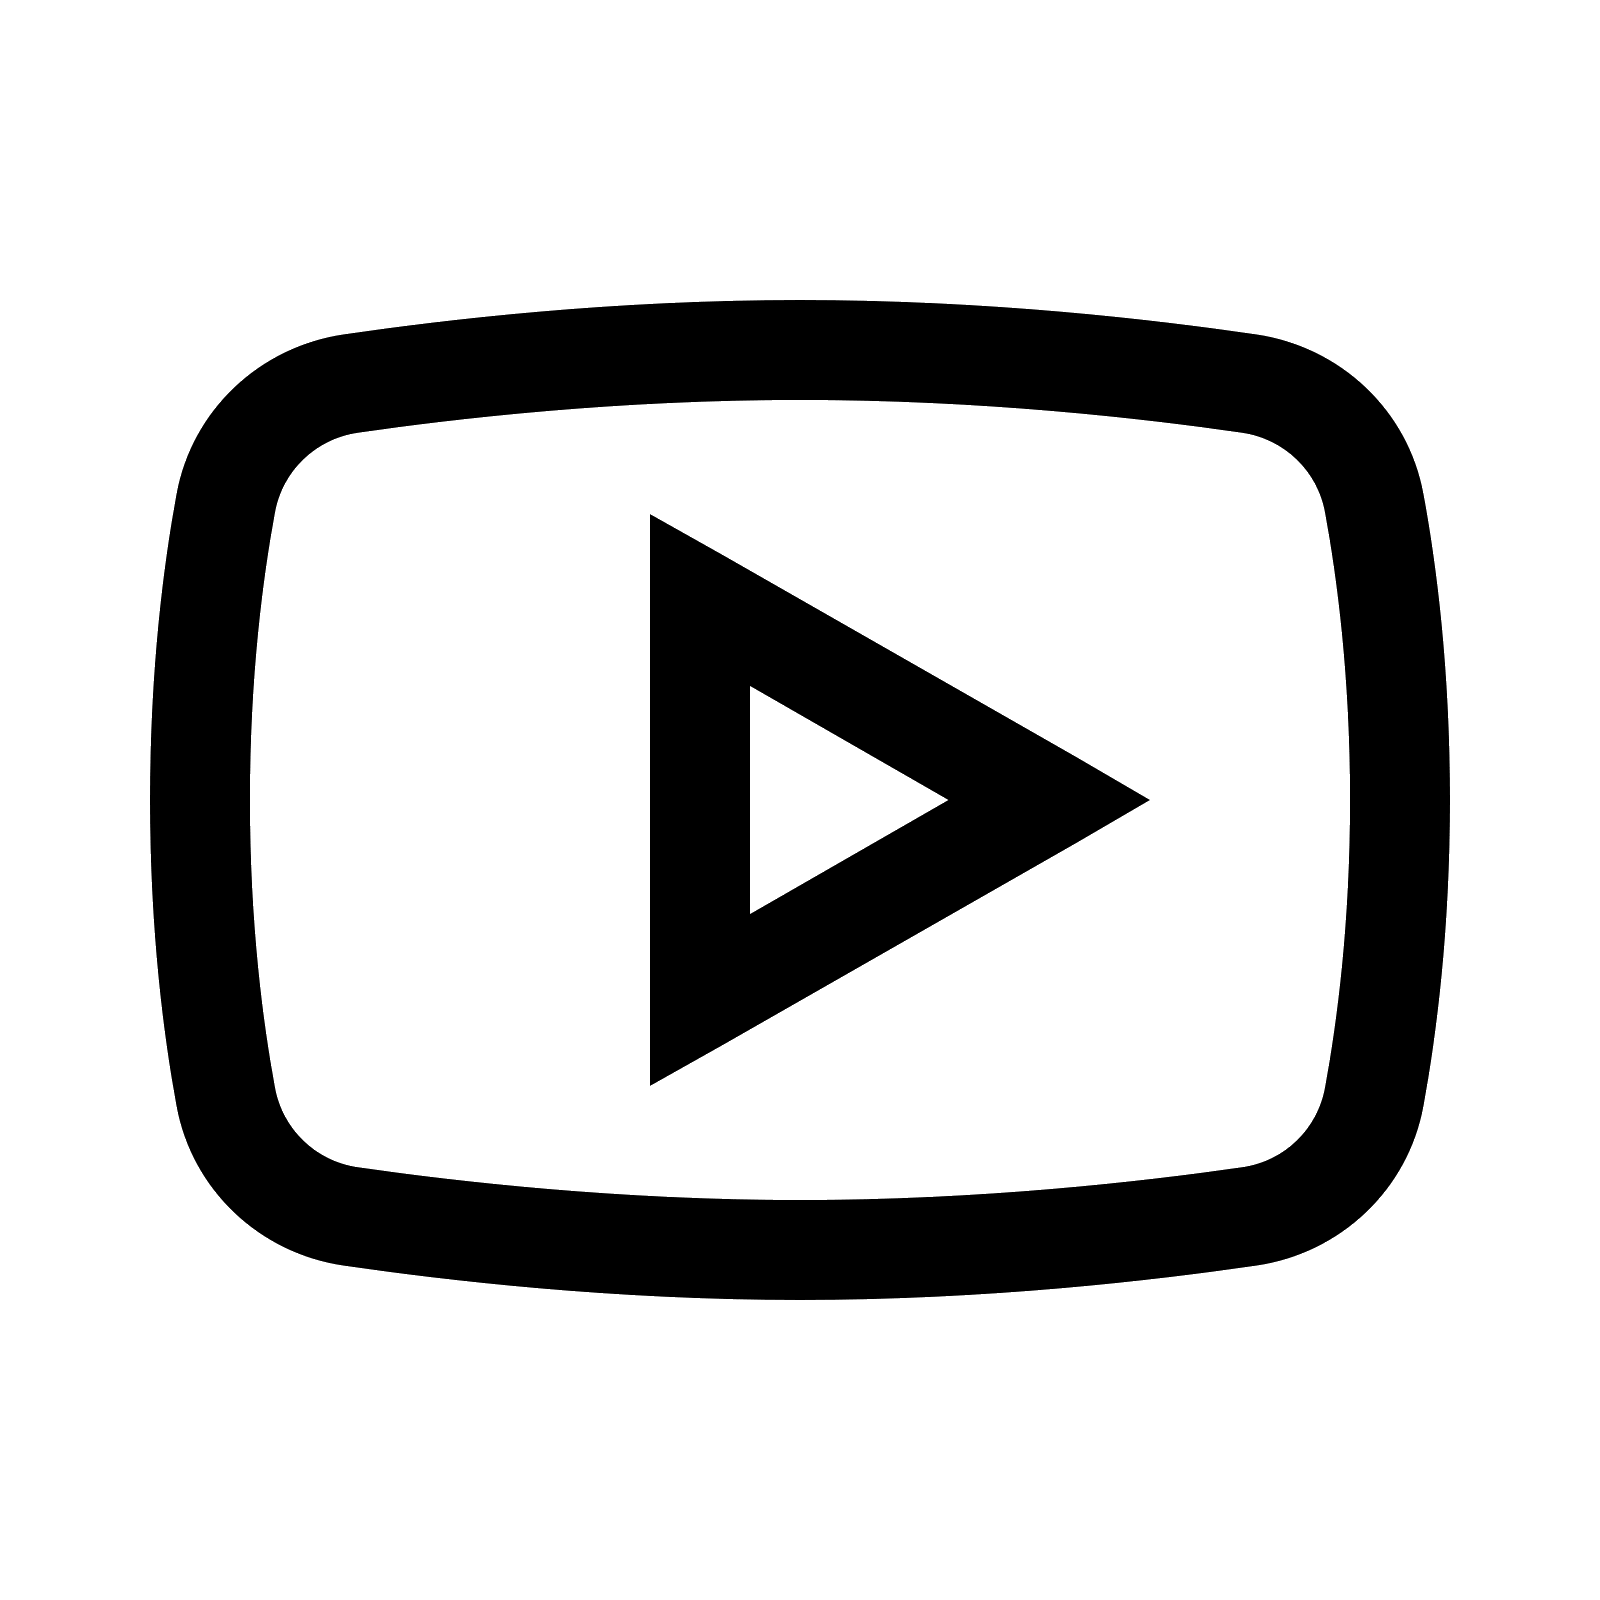 Transparent Youtube Logo Black Background Rwanda 24